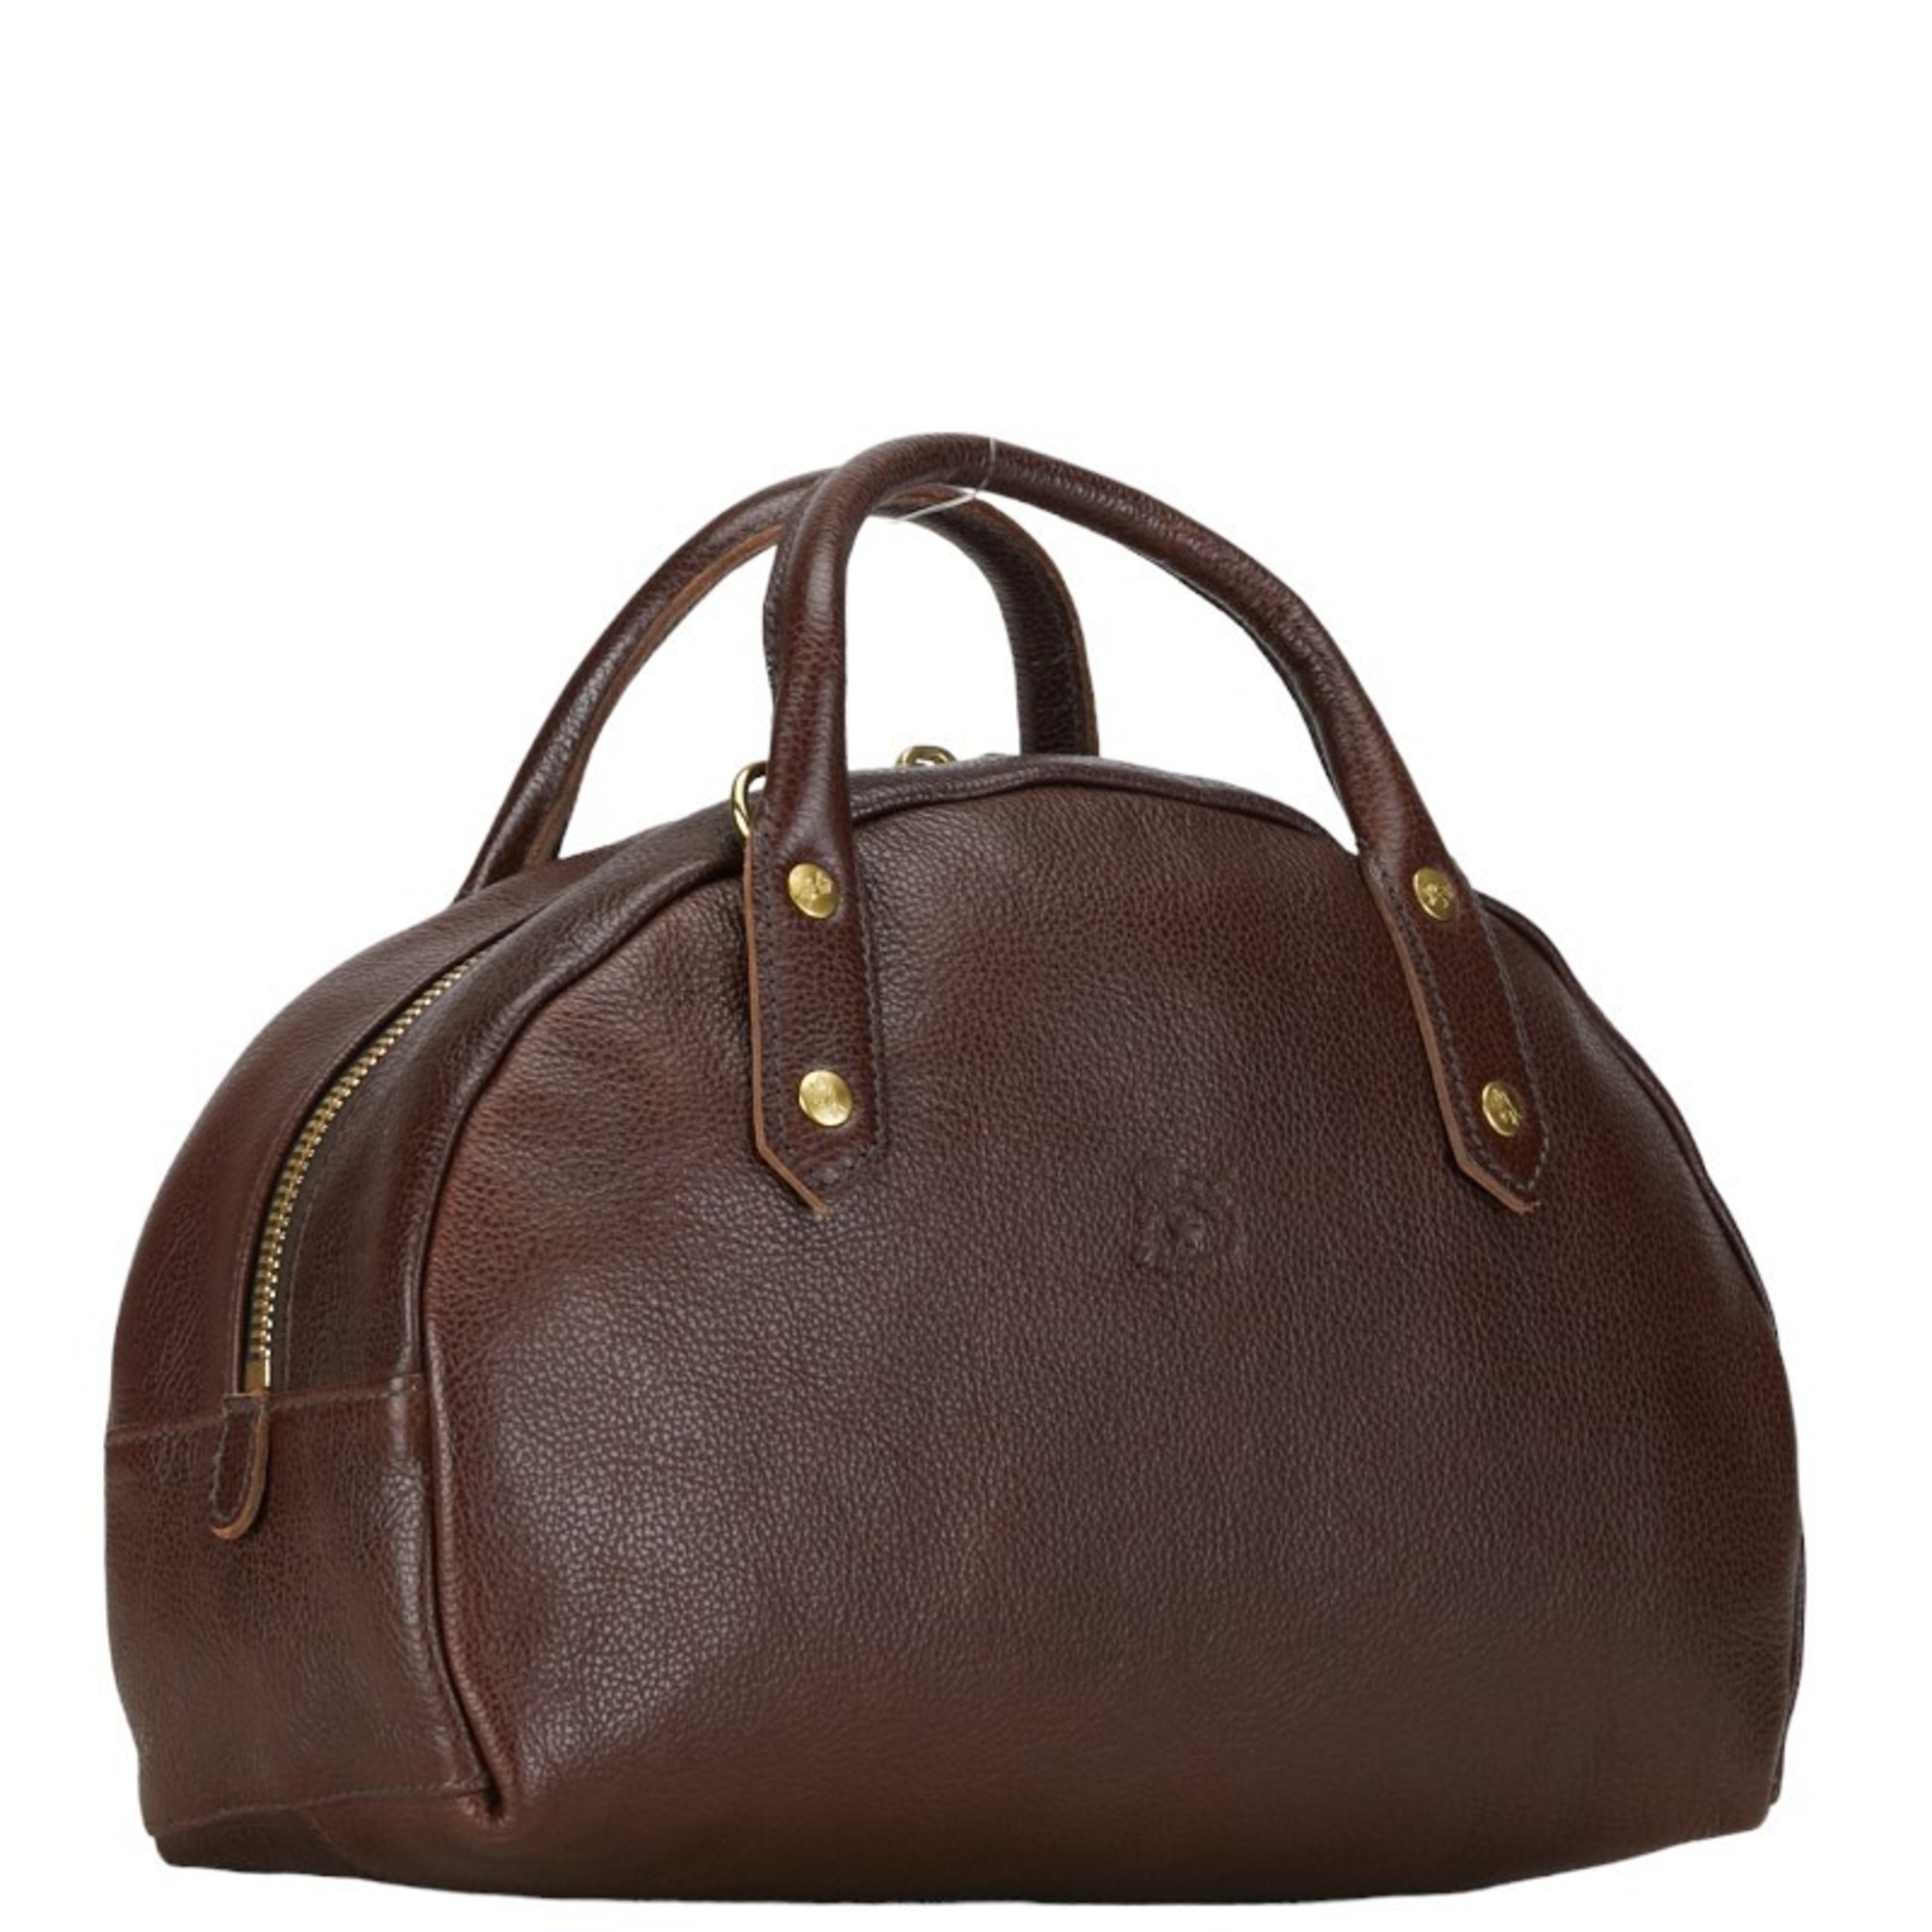 IL BISONTE Handbag Shoulder Bag Brown Leather Women's